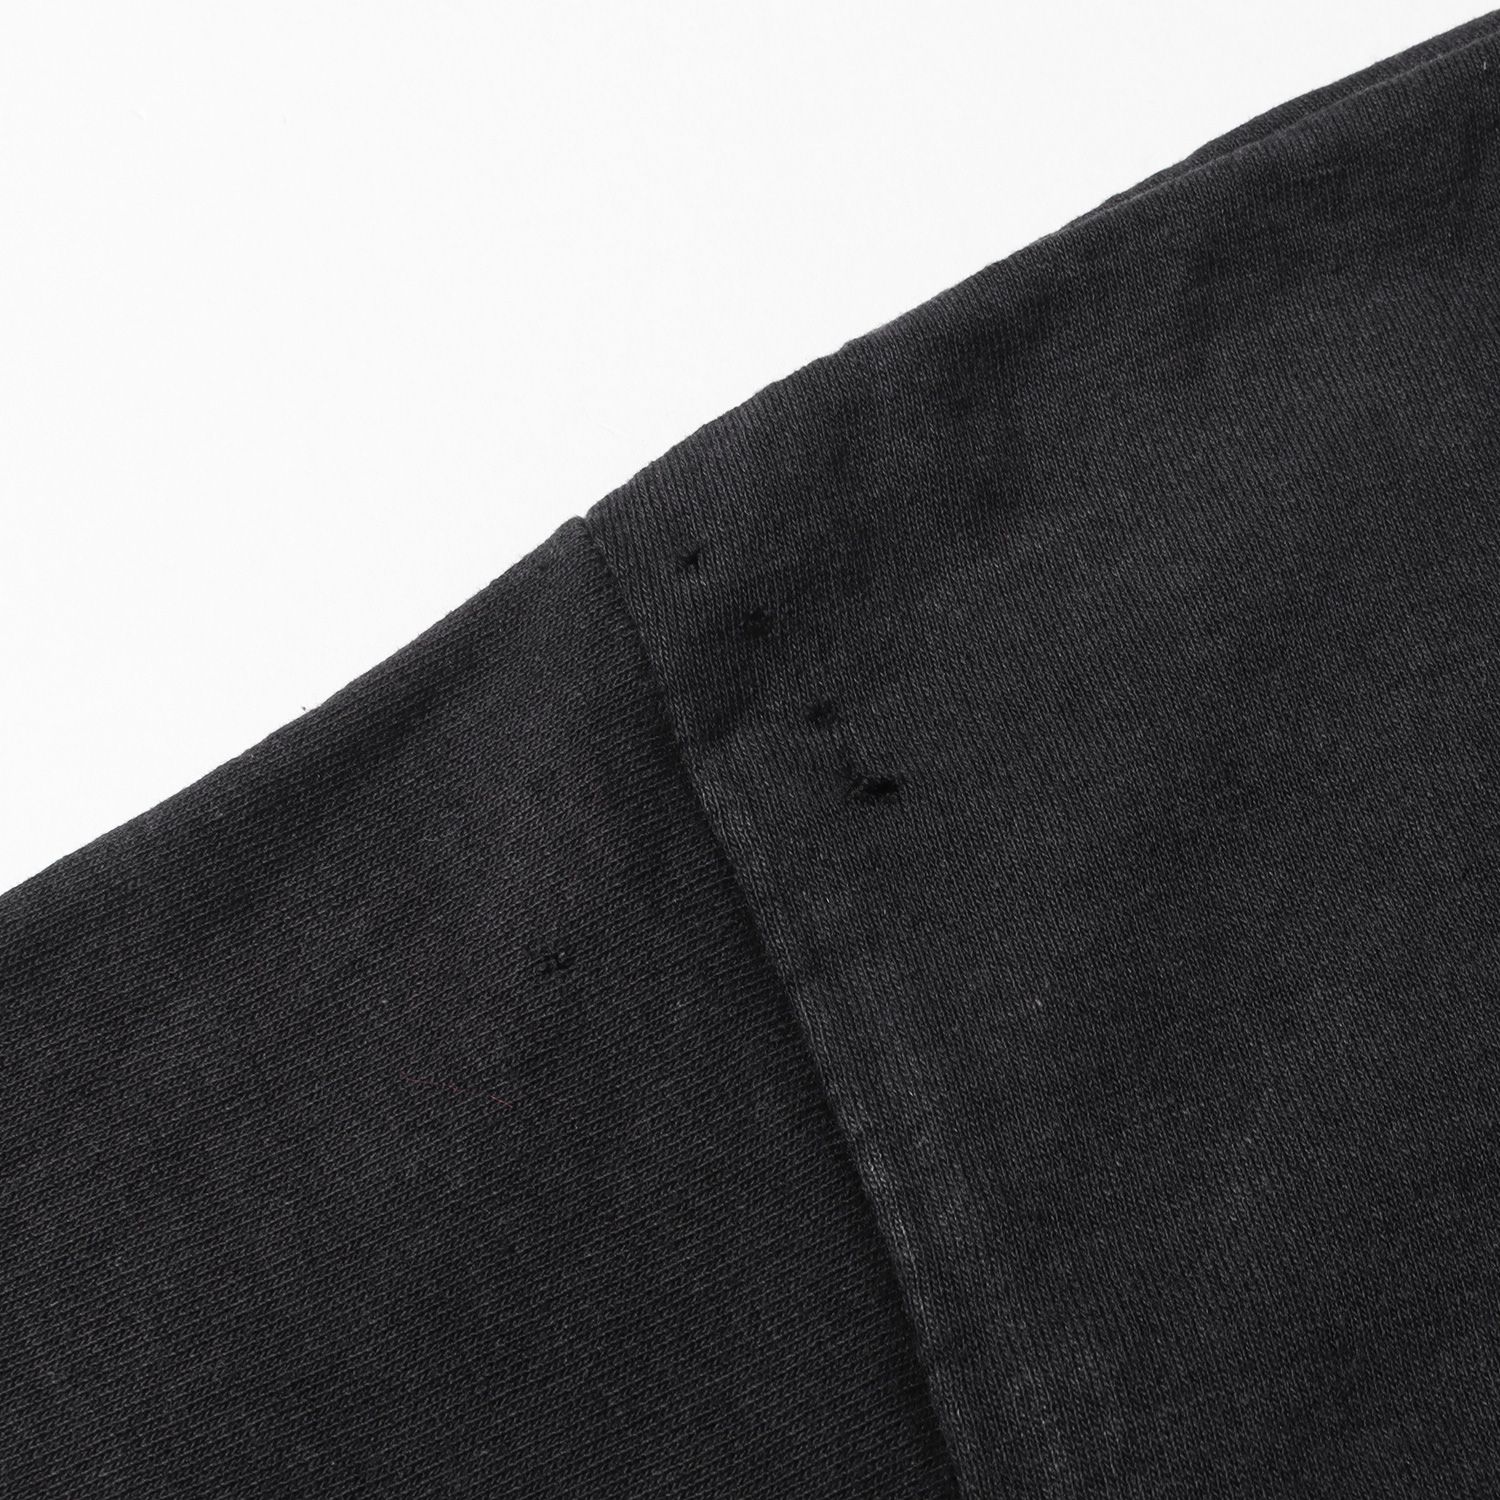 NIKE ナイキ Tシャツ サイズ:M 社外タグ 筆記体ロゴ クルーネック Tシャツ SOFFEボディ / USA製 vintage ヴィンテージ  70s ブラック 黒 トップス カットソー 半袖 アメカジ スポーツ 古着